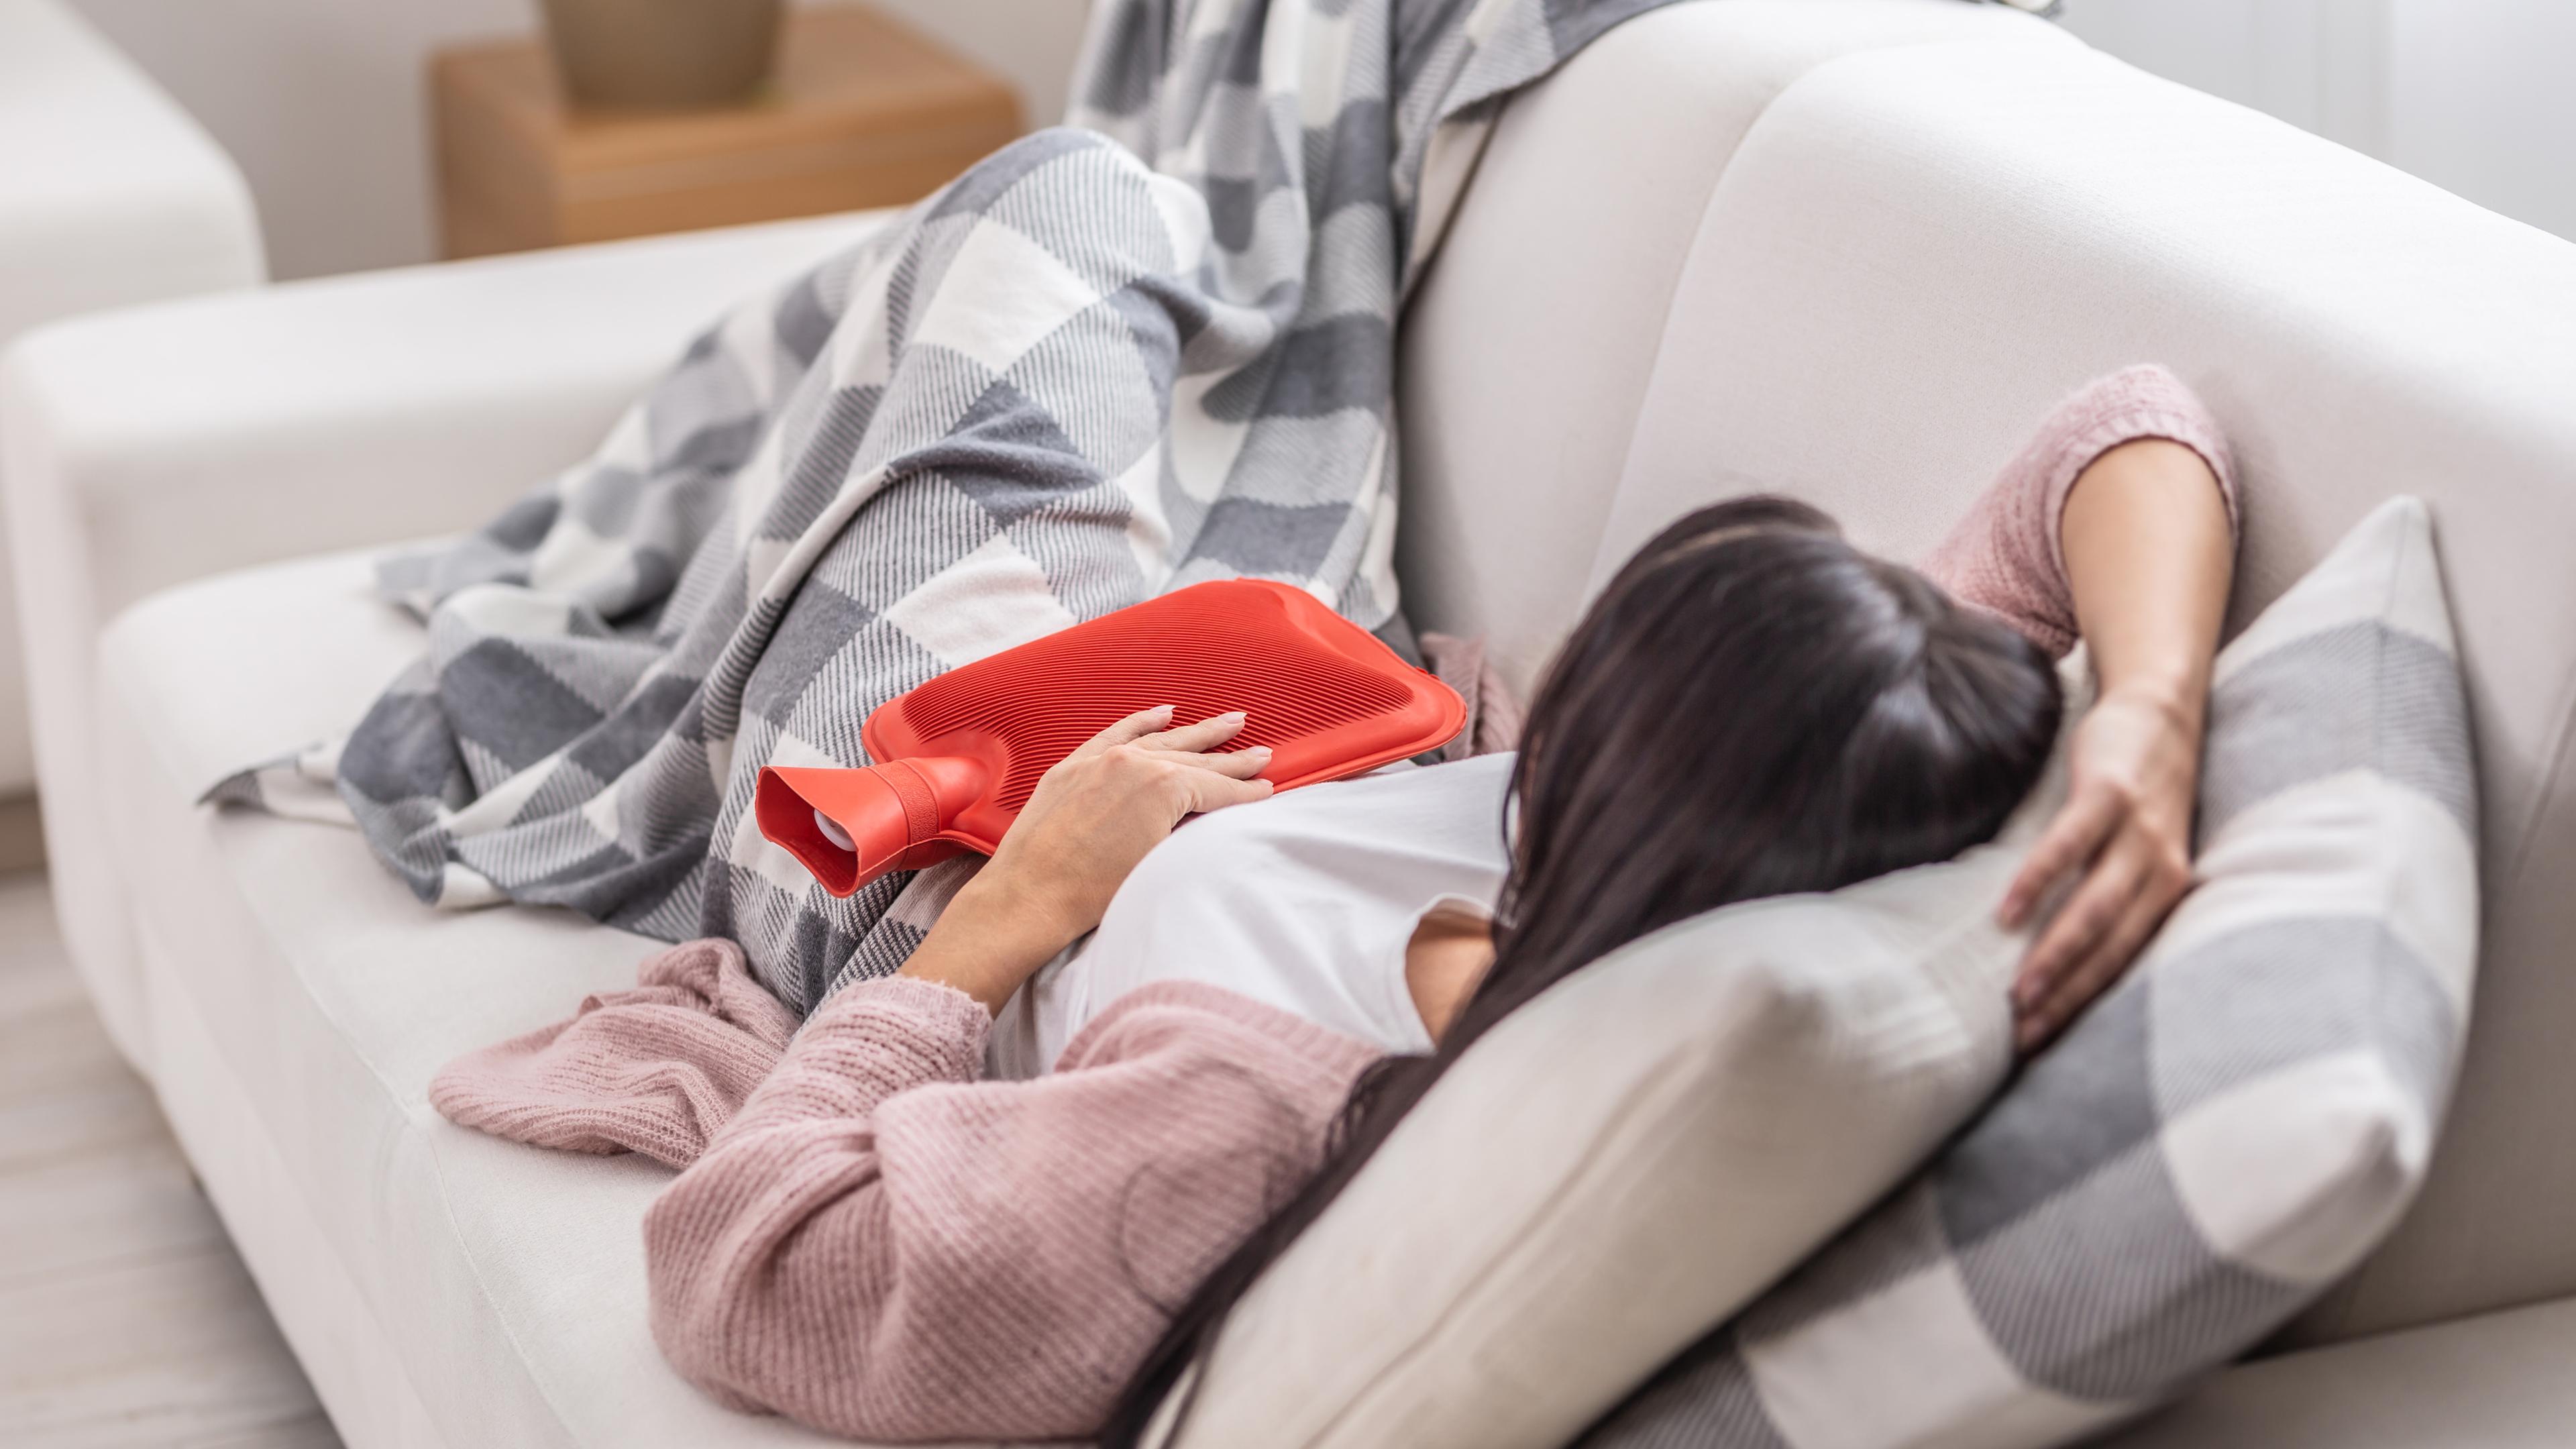 Eine Frau liegt mit Menstruationsbeschwerden auf dem Sofa. Sie hält eine rote Wärmflasche auf ihren Bauch und ist mit einer karierten Decke zugedeckt.